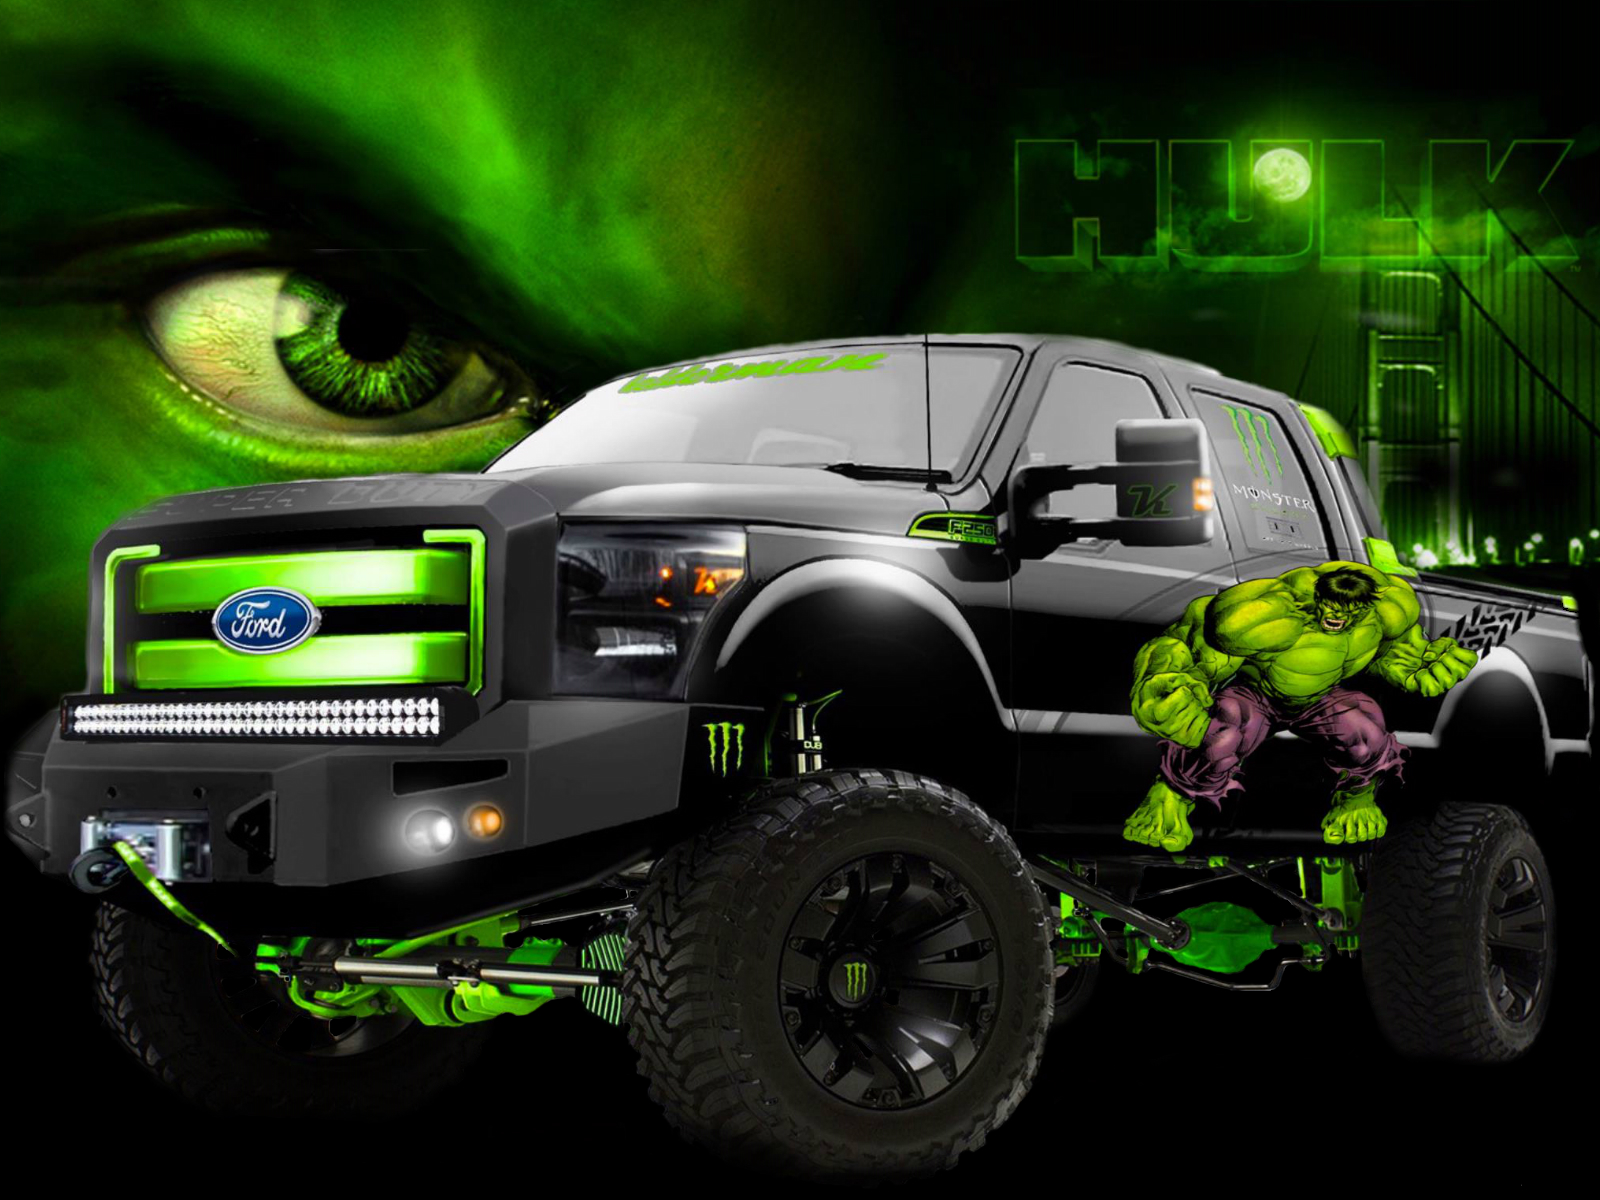 vehicles, Monster, Hulk, Trucks Wallpaper